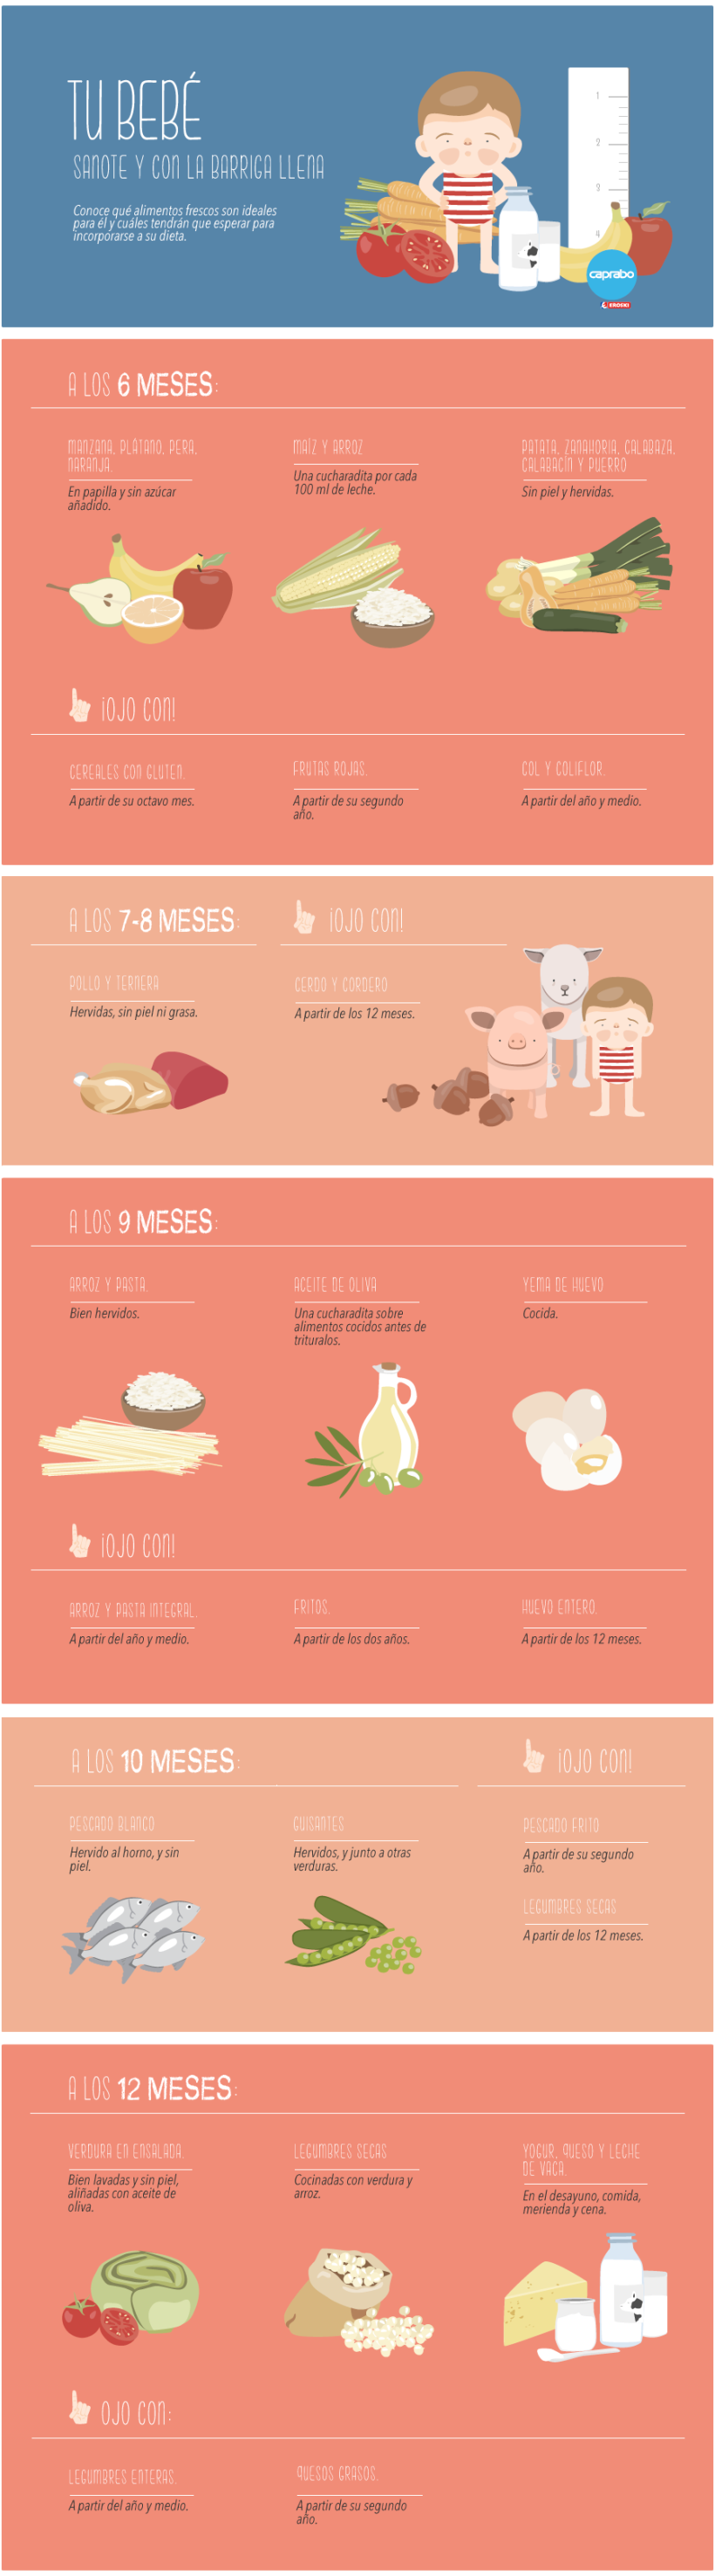 ¿Qué puede comer tu bebé durante su primer año? 1